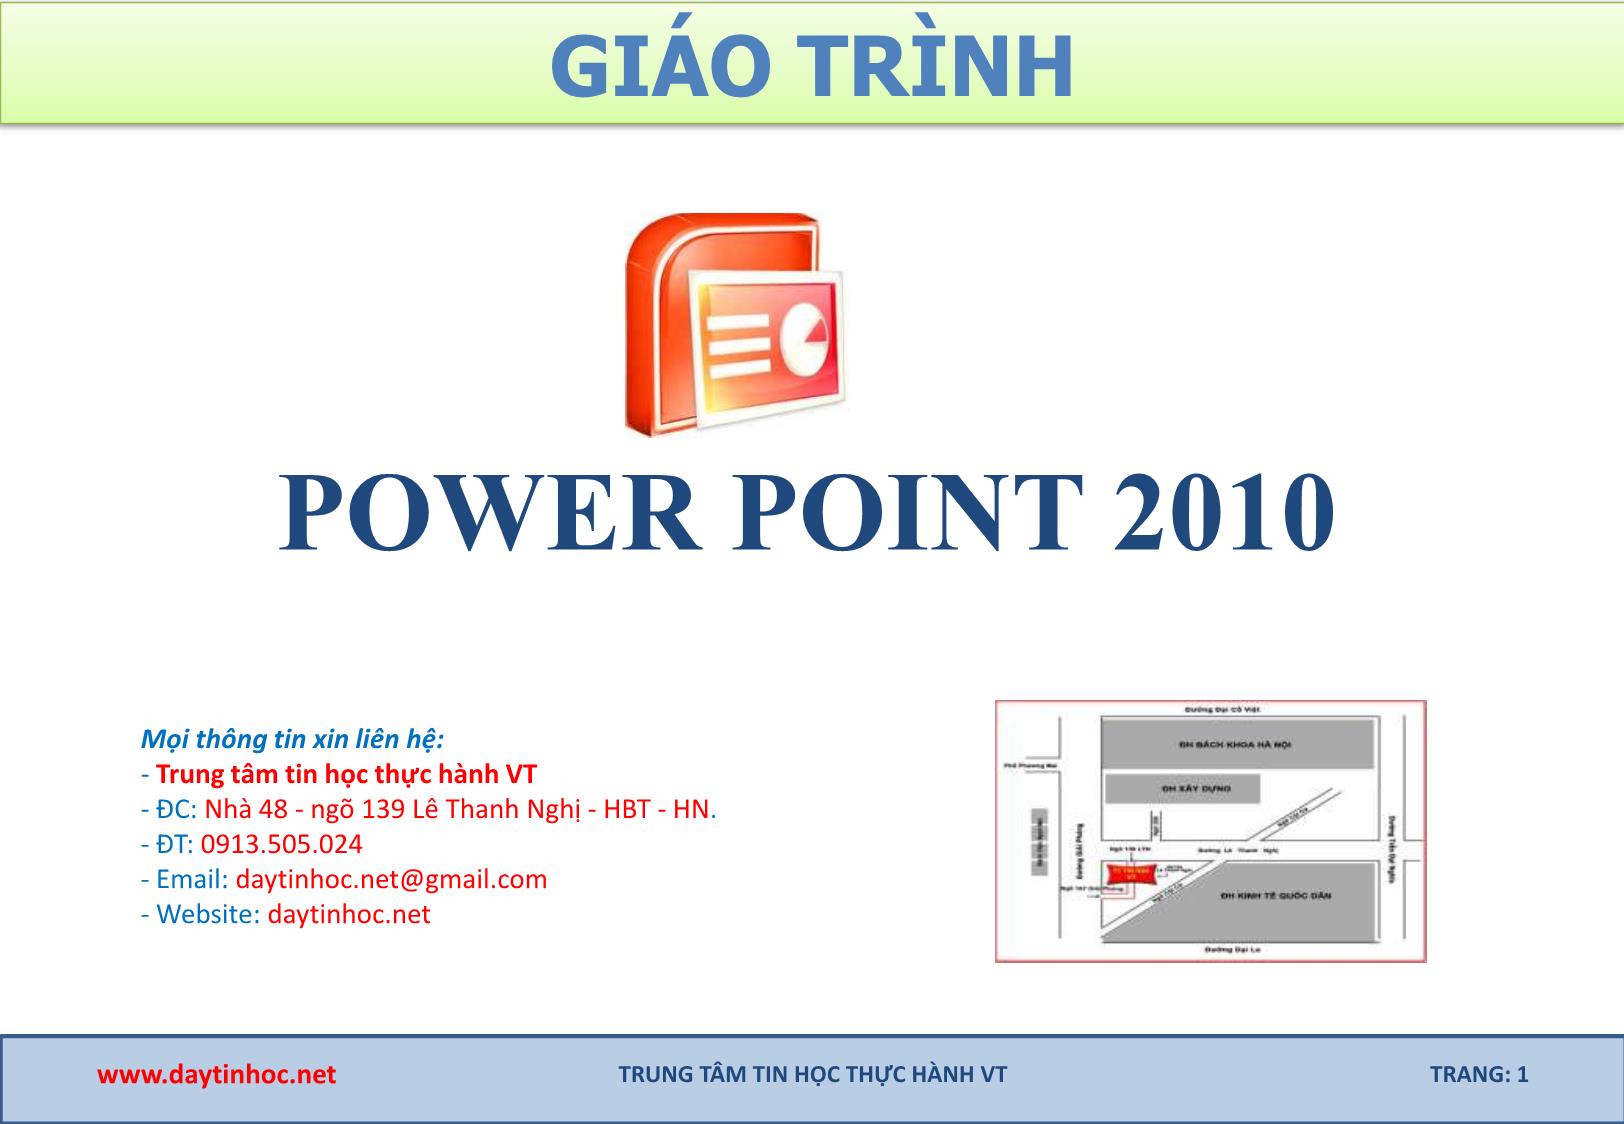 Bài giảng PowerPoint 2010 trang 1